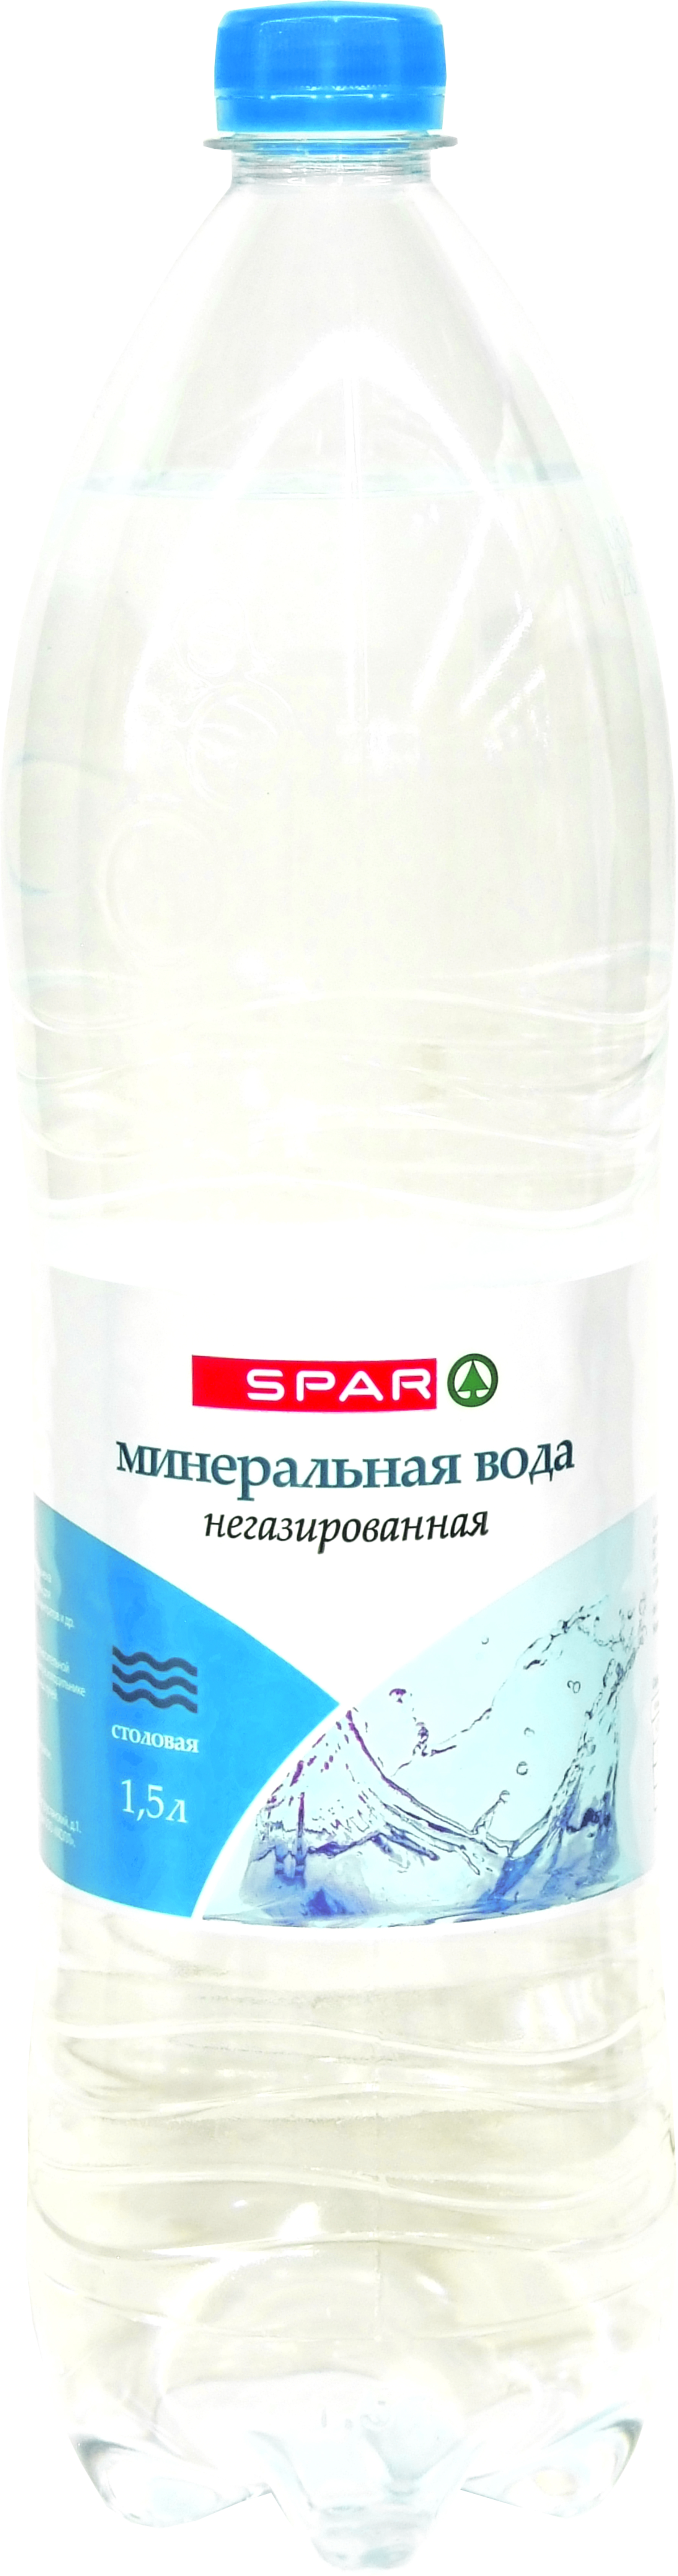 Вода минеральная Spar негазированная 1,5 л